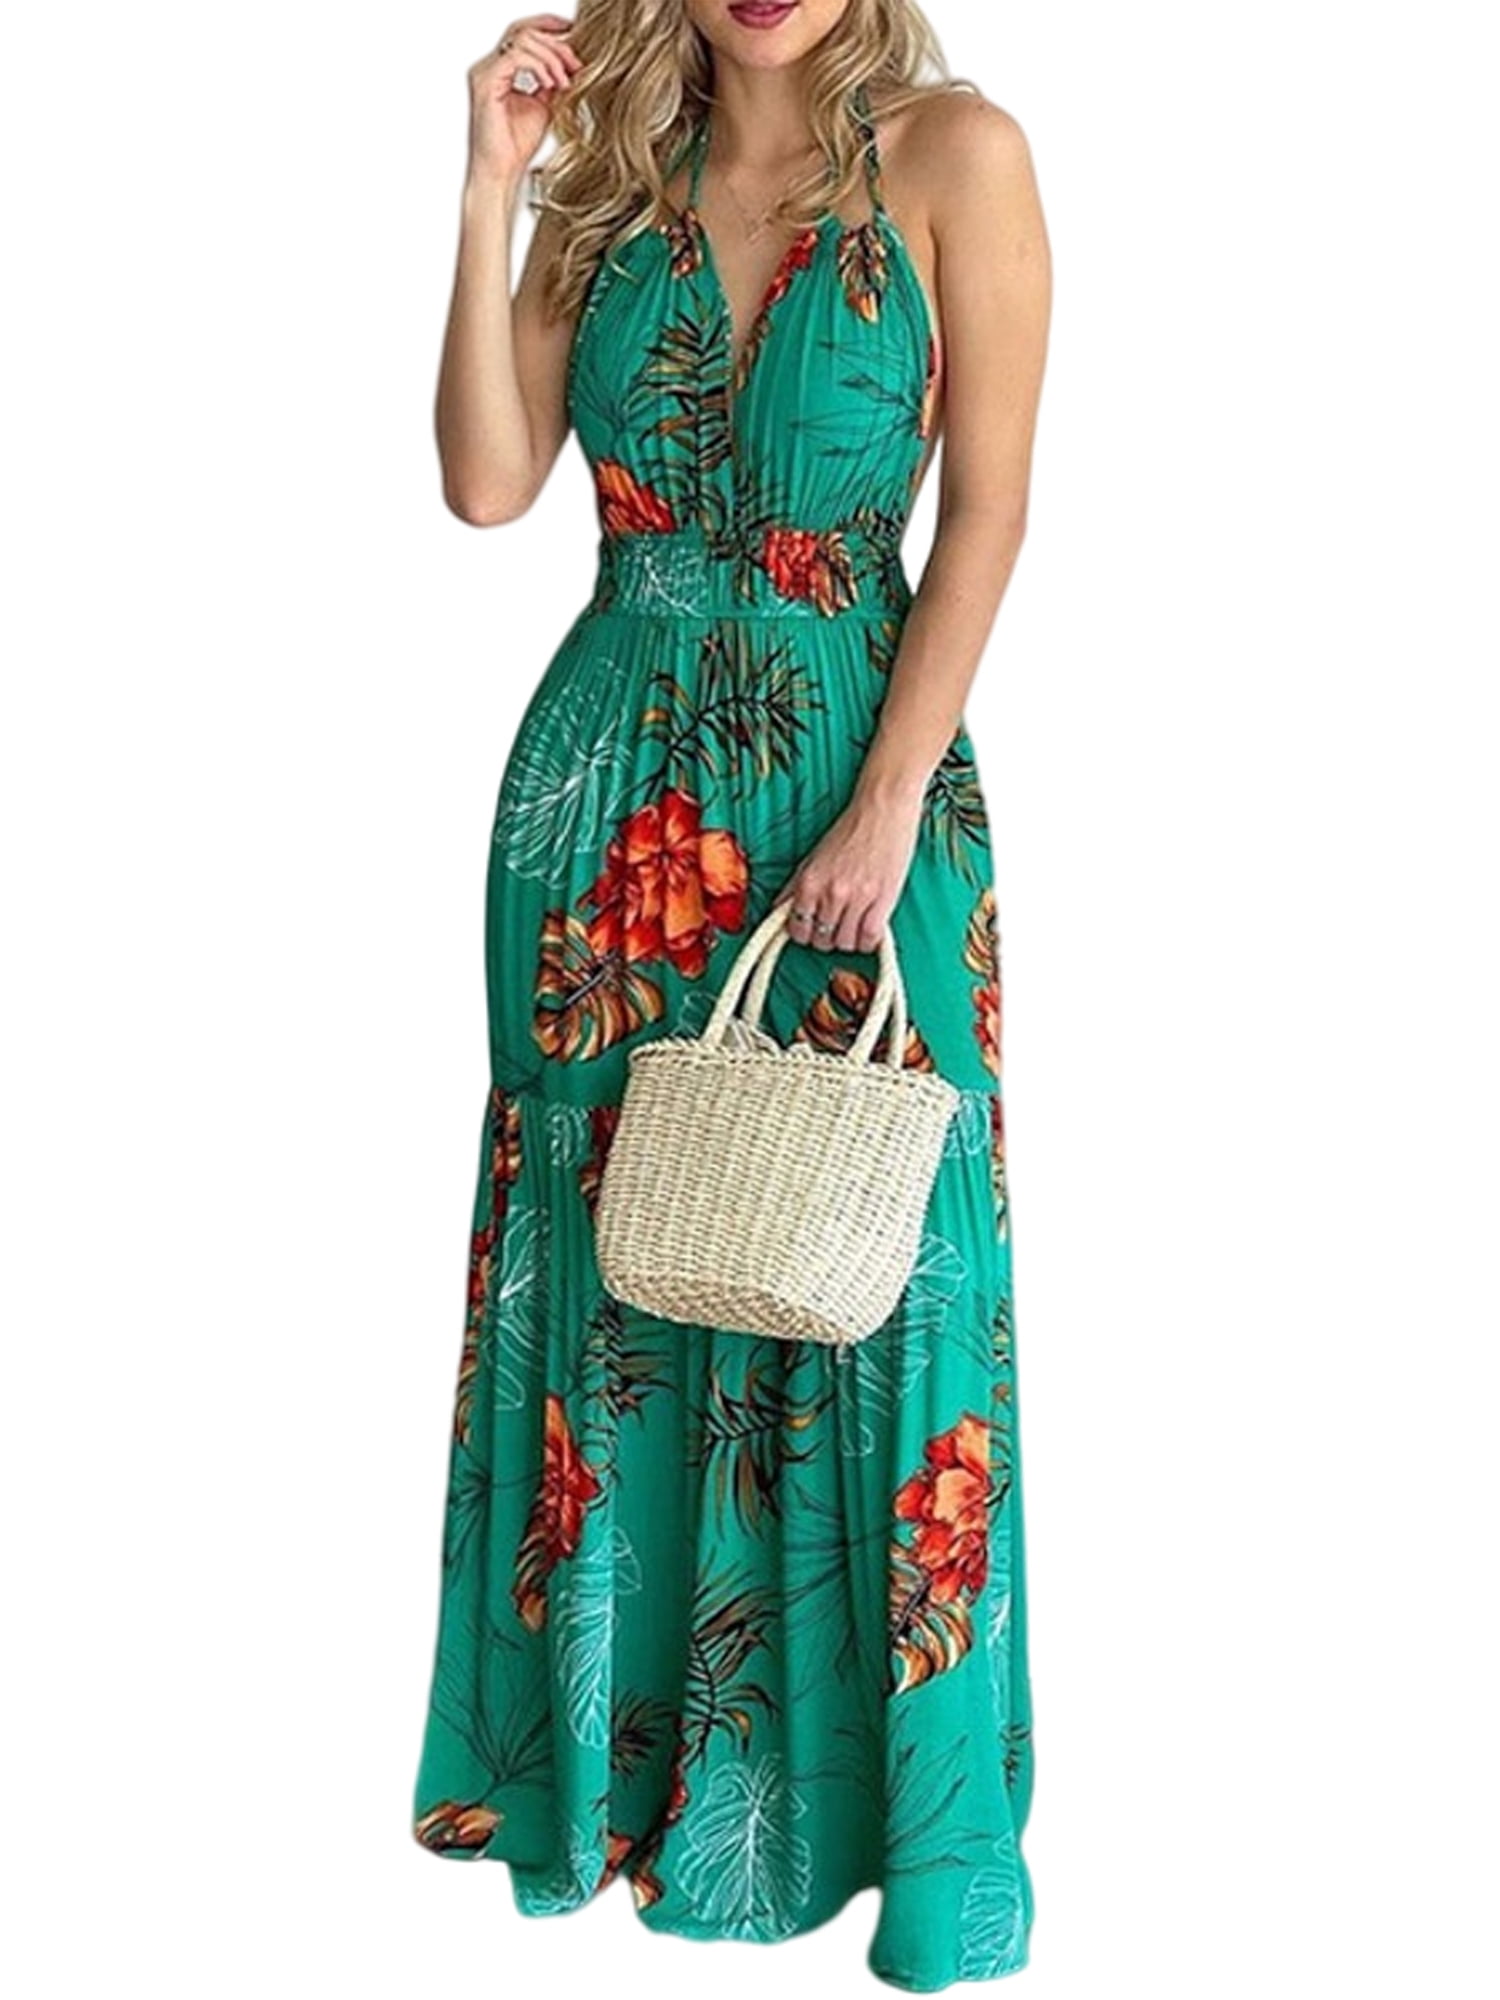 Women Boho Sleeveless Maxi Dresses Round Neck Pachwork Floral Print Tank Vest Sundrss Beach Long Dress Summer Dress